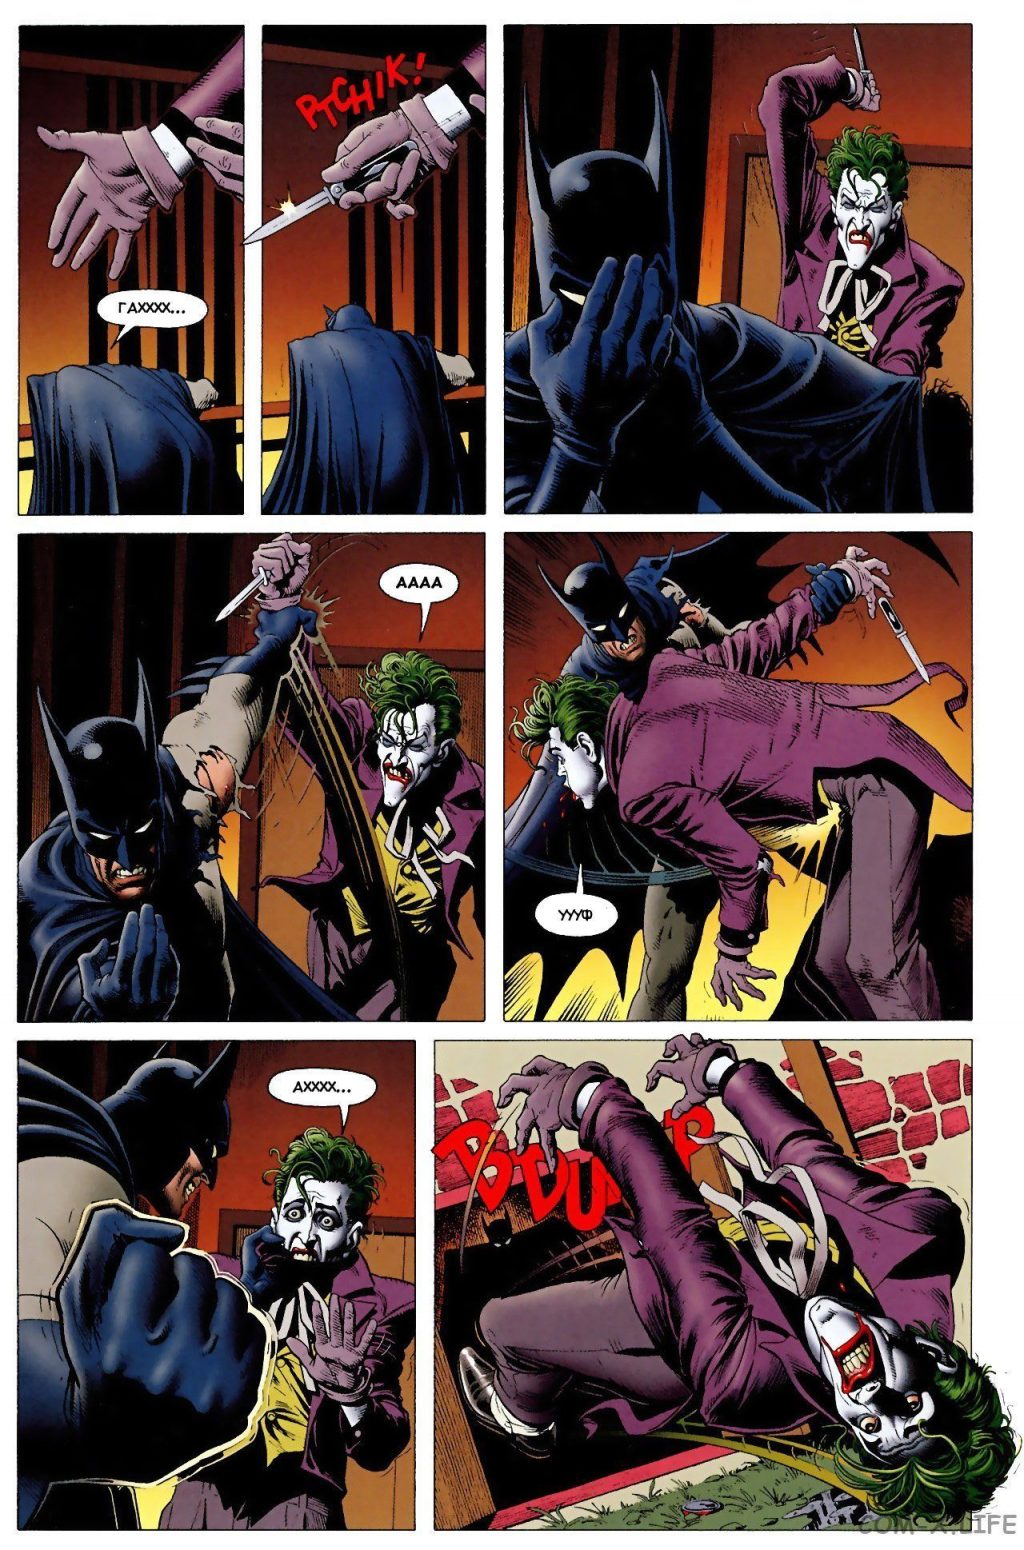 Читати онлайн комікс «Бетмен. Убвичій жарт» російською мовою безкоштовно